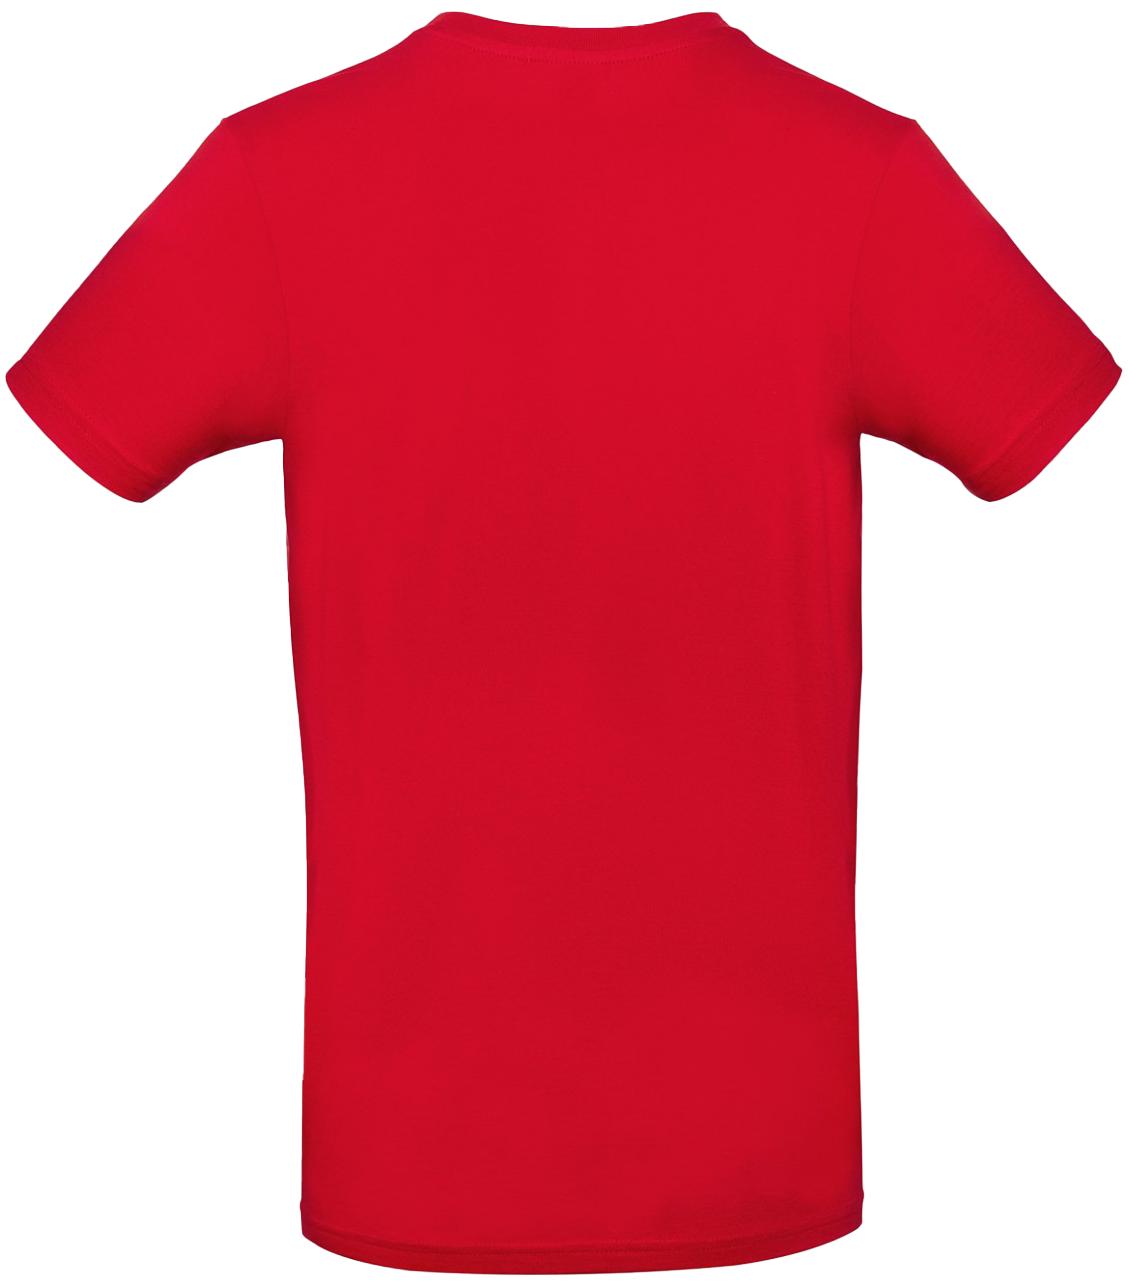 T-shirt E#190 Röd 48